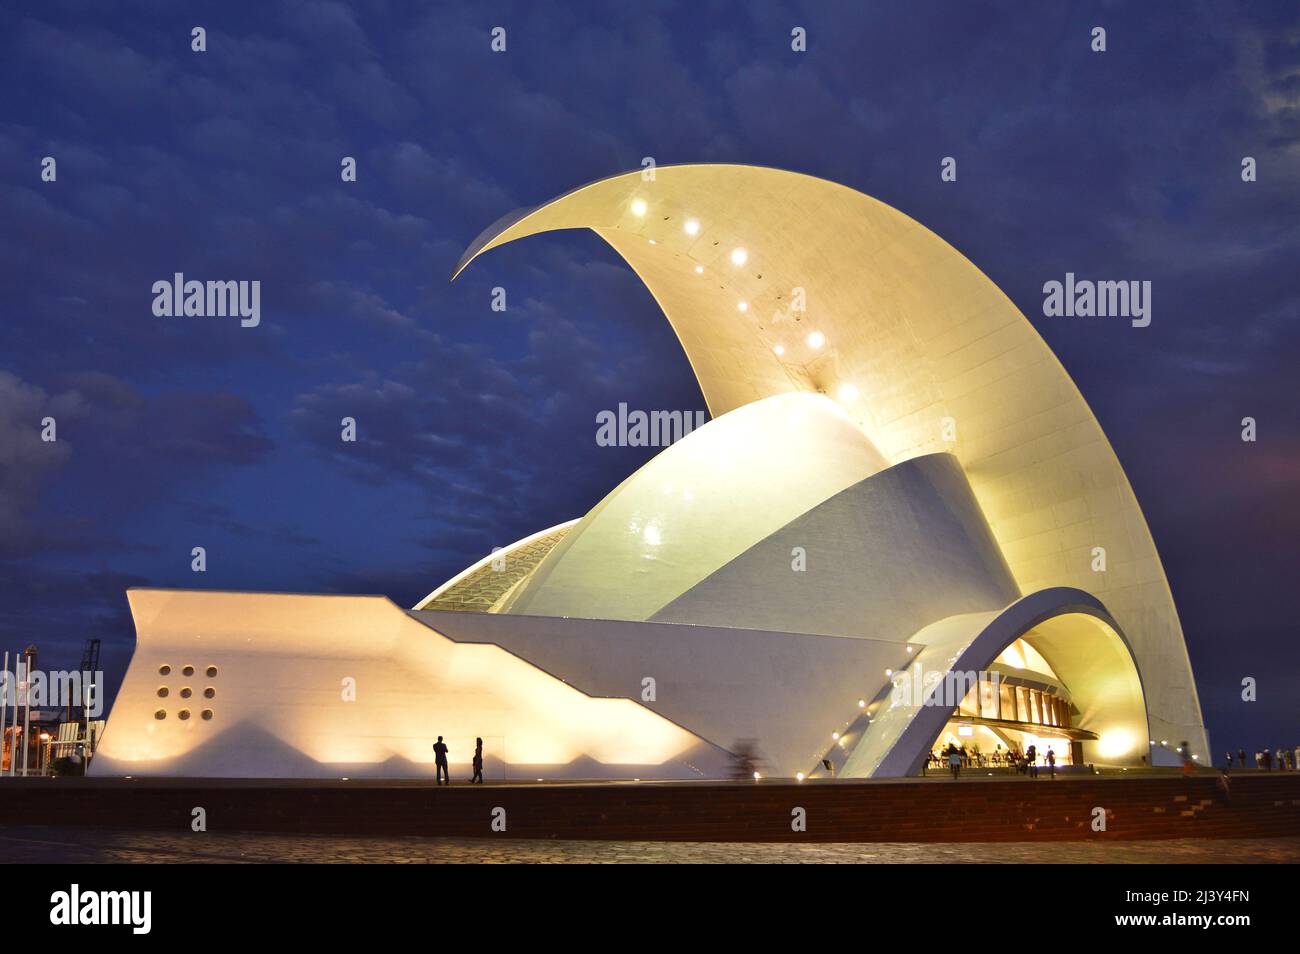 Auditorio de Teneriffa, moderne Wahrzeichen-Architektur beleuchtet in der Nacht in Santa Cruz de Teneriffa Kanarische Inseln. Entworfen von Santiago Calatrava. Stockfoto